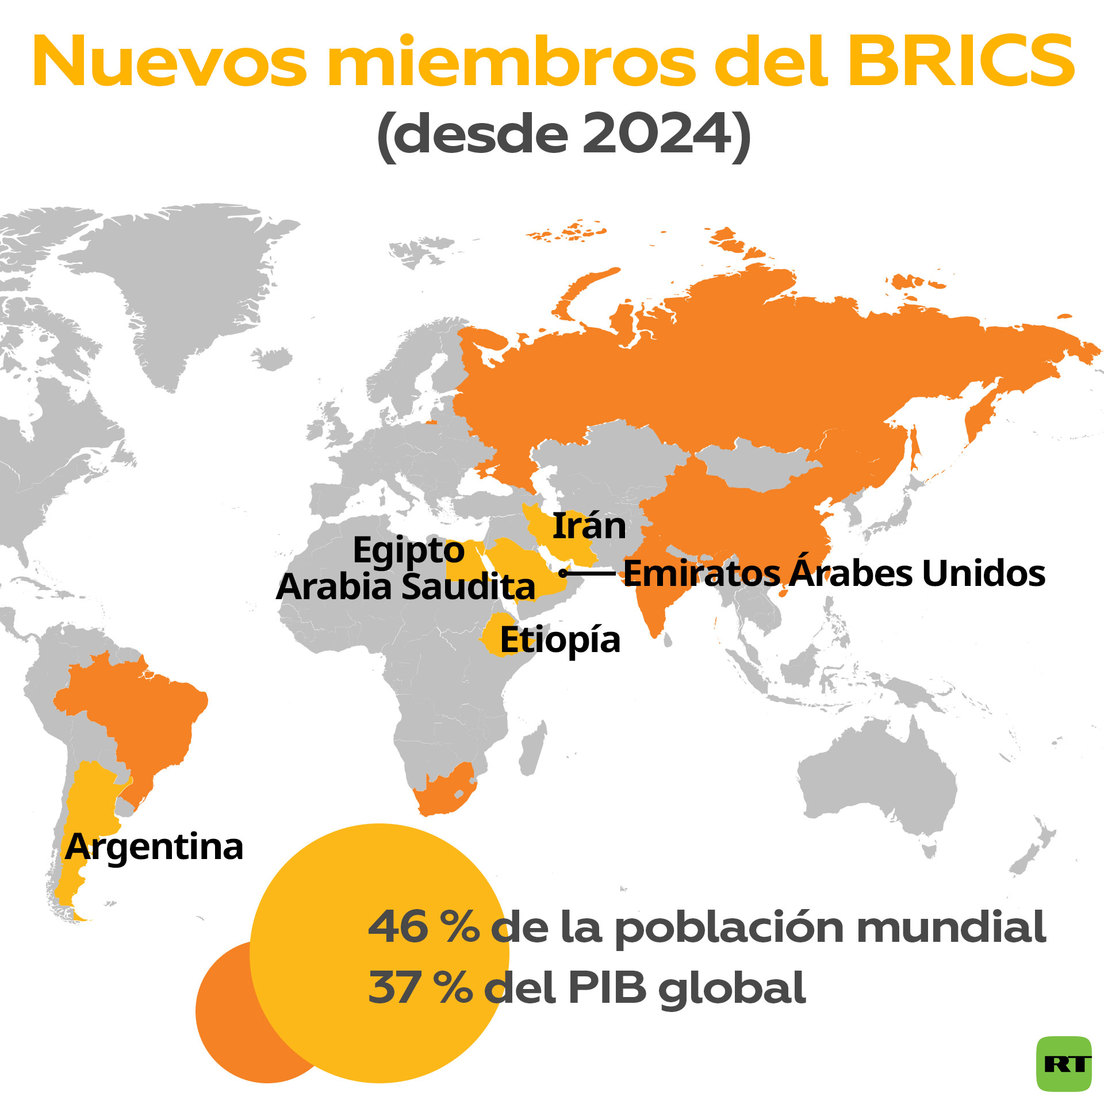 El BRICS duplica con creces el número de miembros